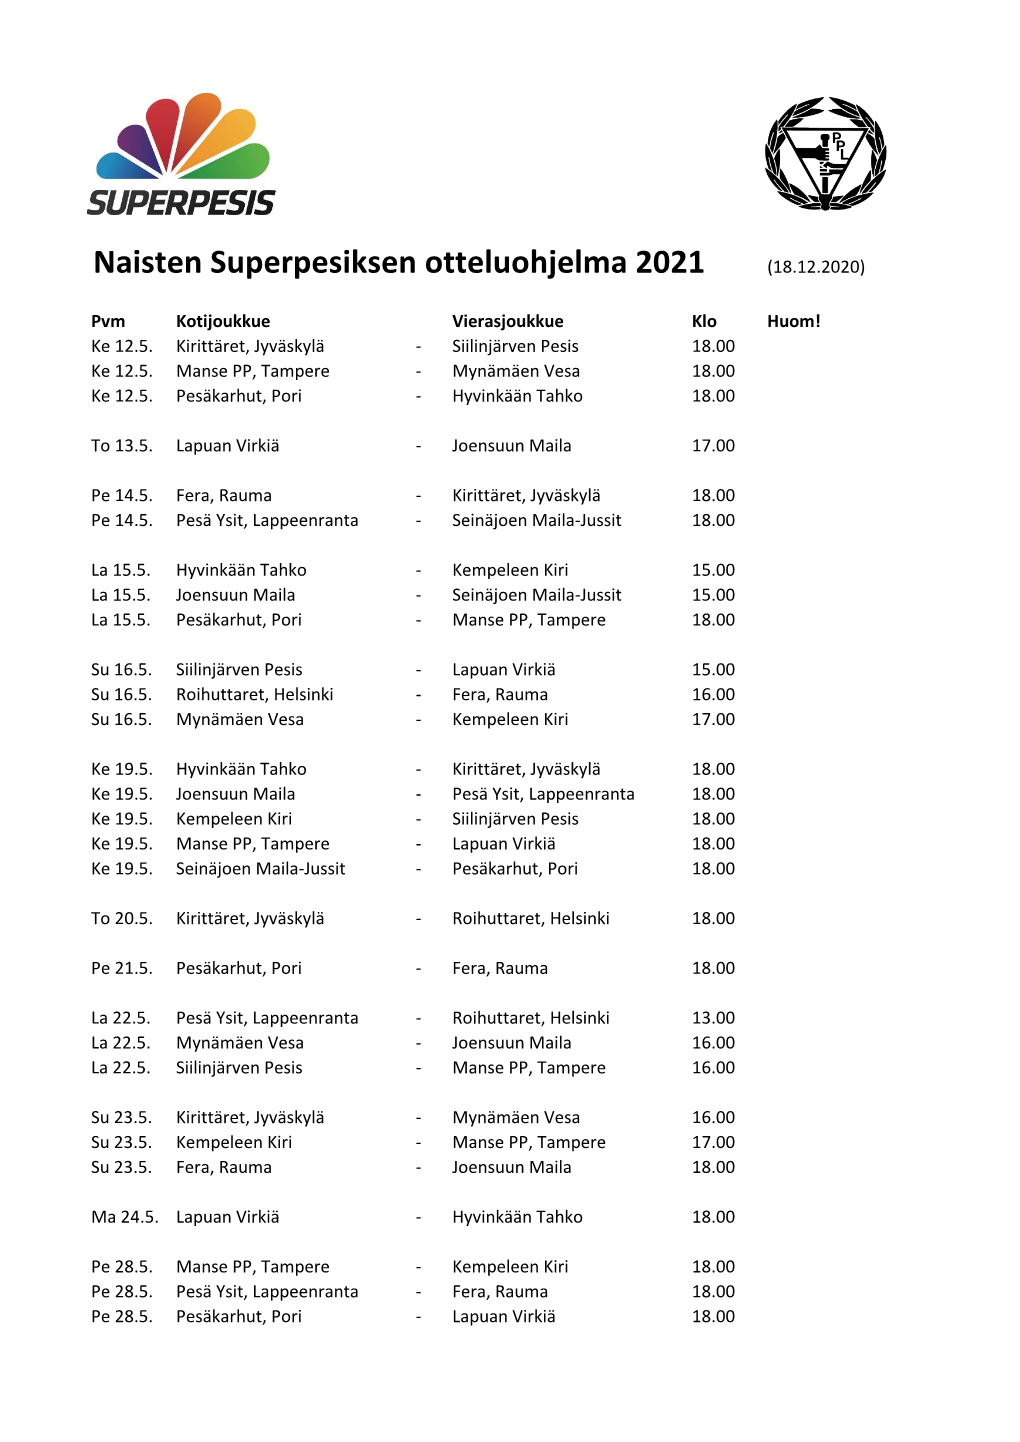 Naisten Superpesiksen Otteluohjelma 2021 (18.12.2020)